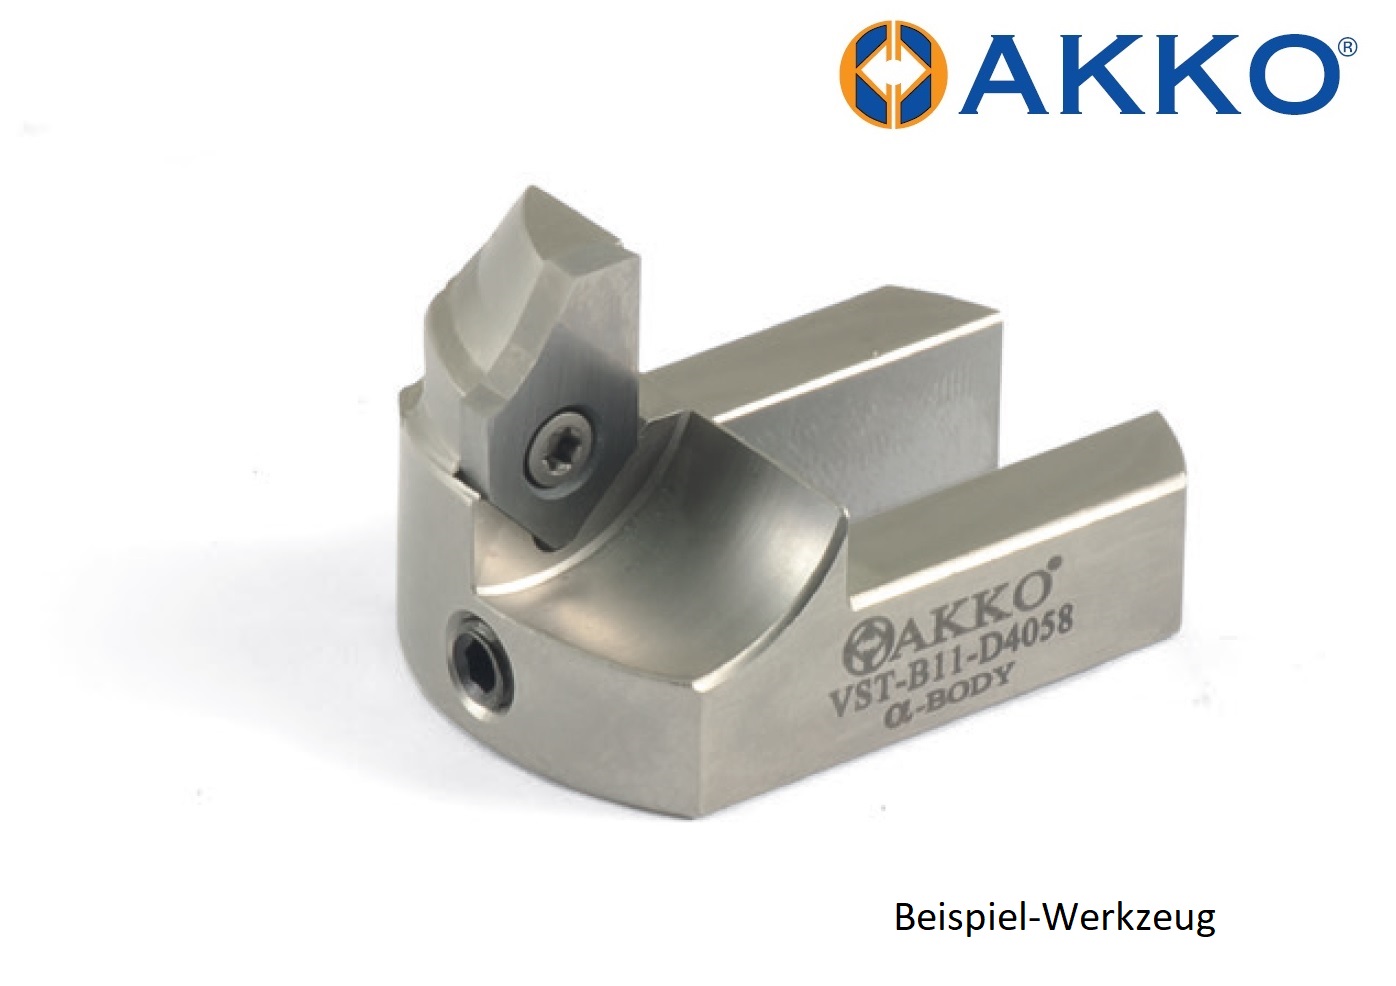 AKKO-Werkzeuge für Ventilsitzbearbeitung, ø-Bereich = 40-58 mm